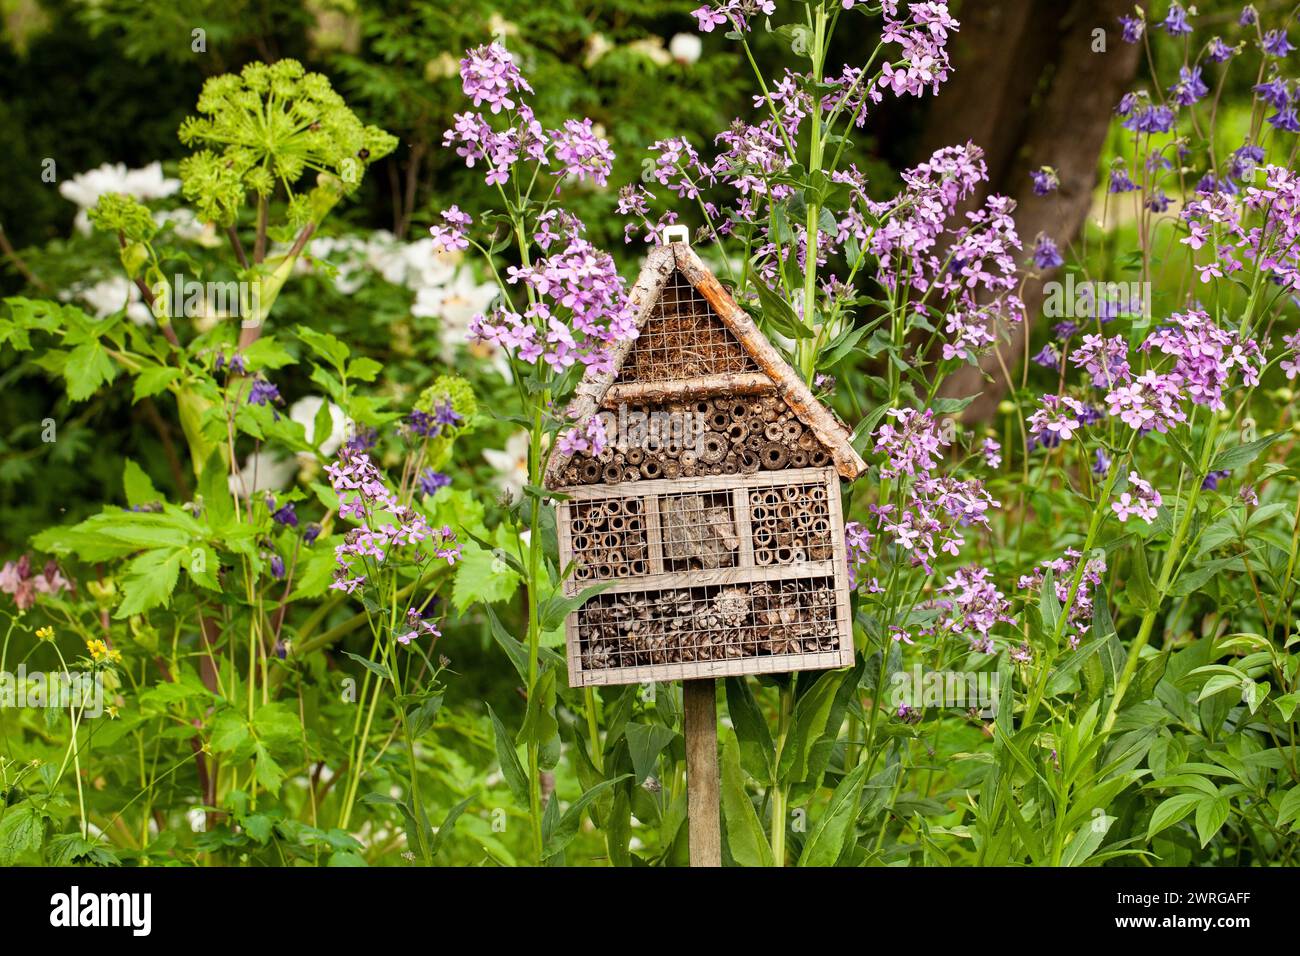 Un bug House est un hôtel pour insectes qui fournit un abri dans le jardin d'été parmi les fleurs Banque D'Images